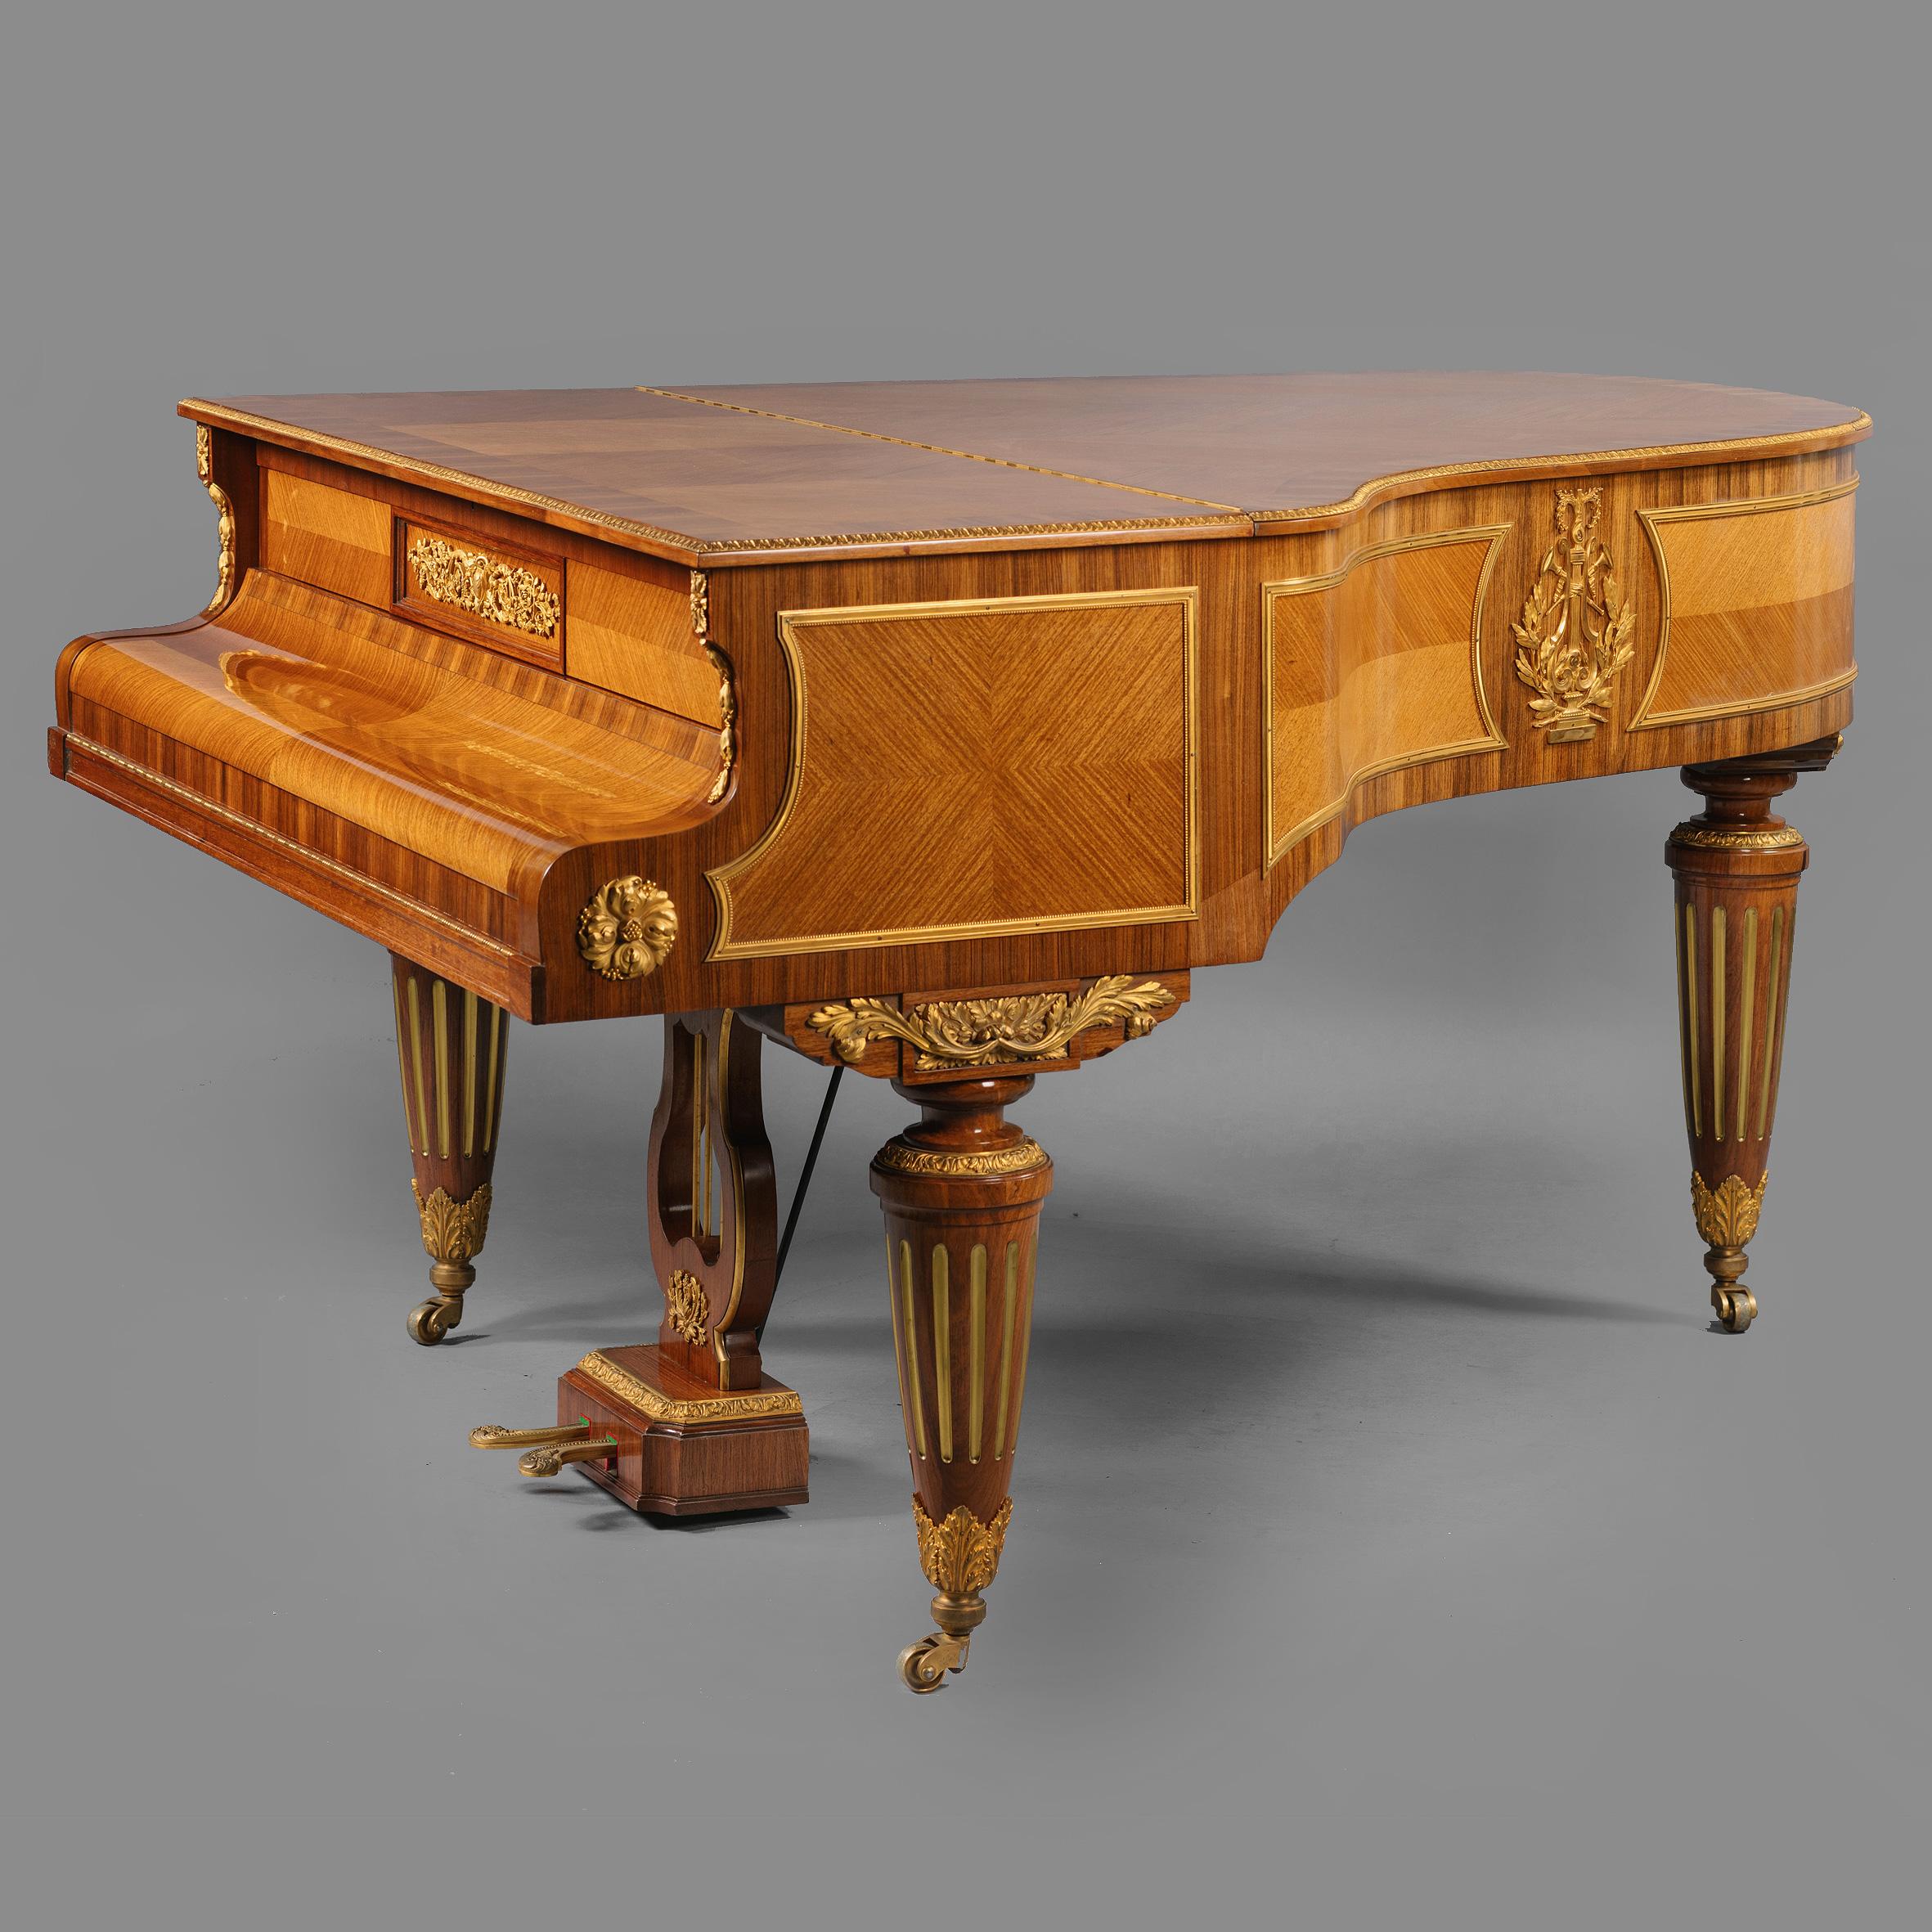 Gaveau Piano - 6 For Sale on 1stDibs | gaveau piano for sale, gaveau paris  piano price, piano gaveau